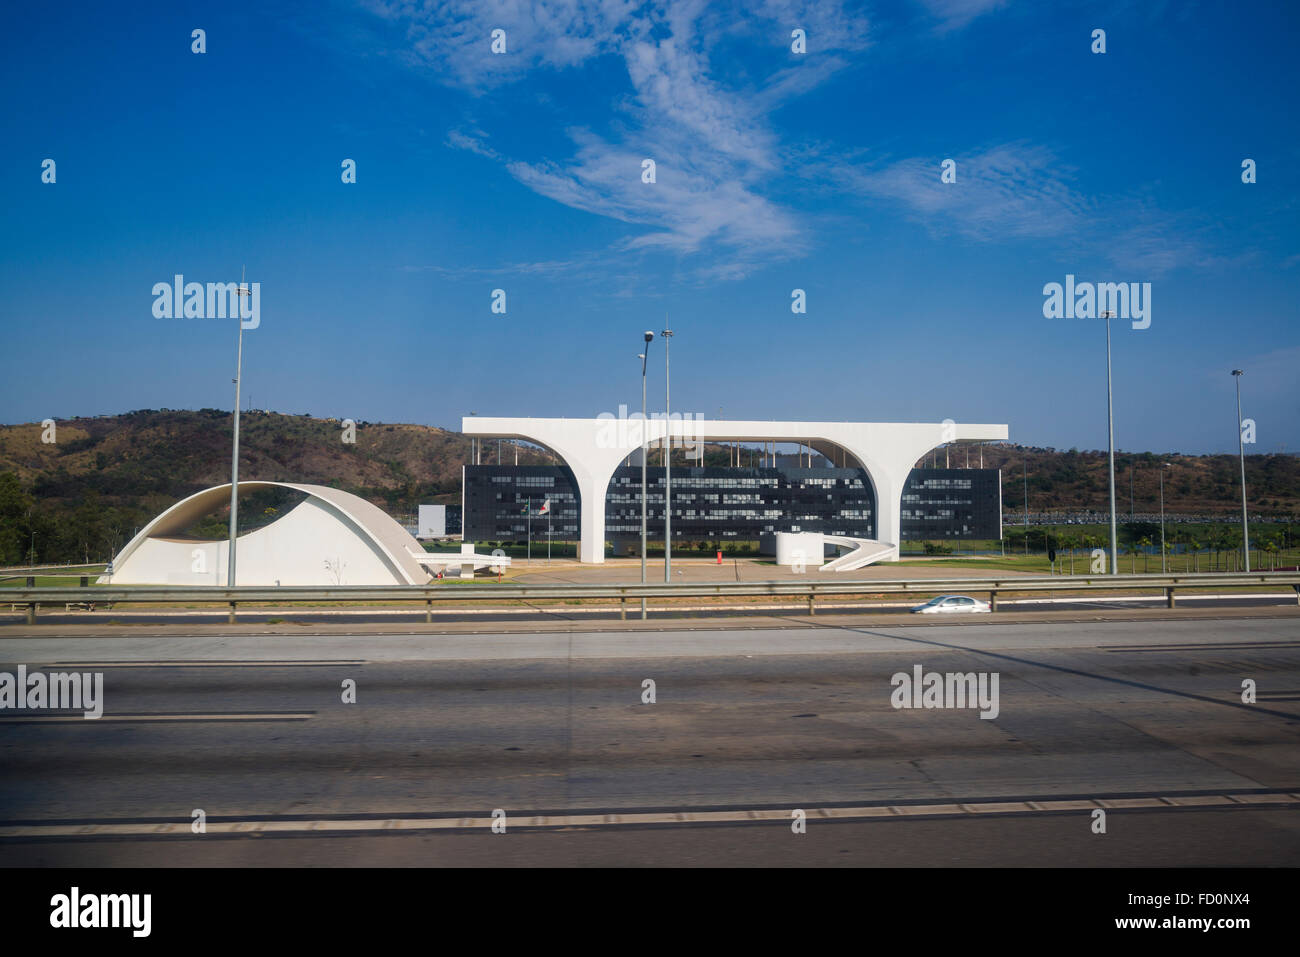 Cidade Administrativa, Administrative Centre, designed by Oscar Niemeyer, Belo Horizonte, Minas Gerais, Brazil Stock Photo